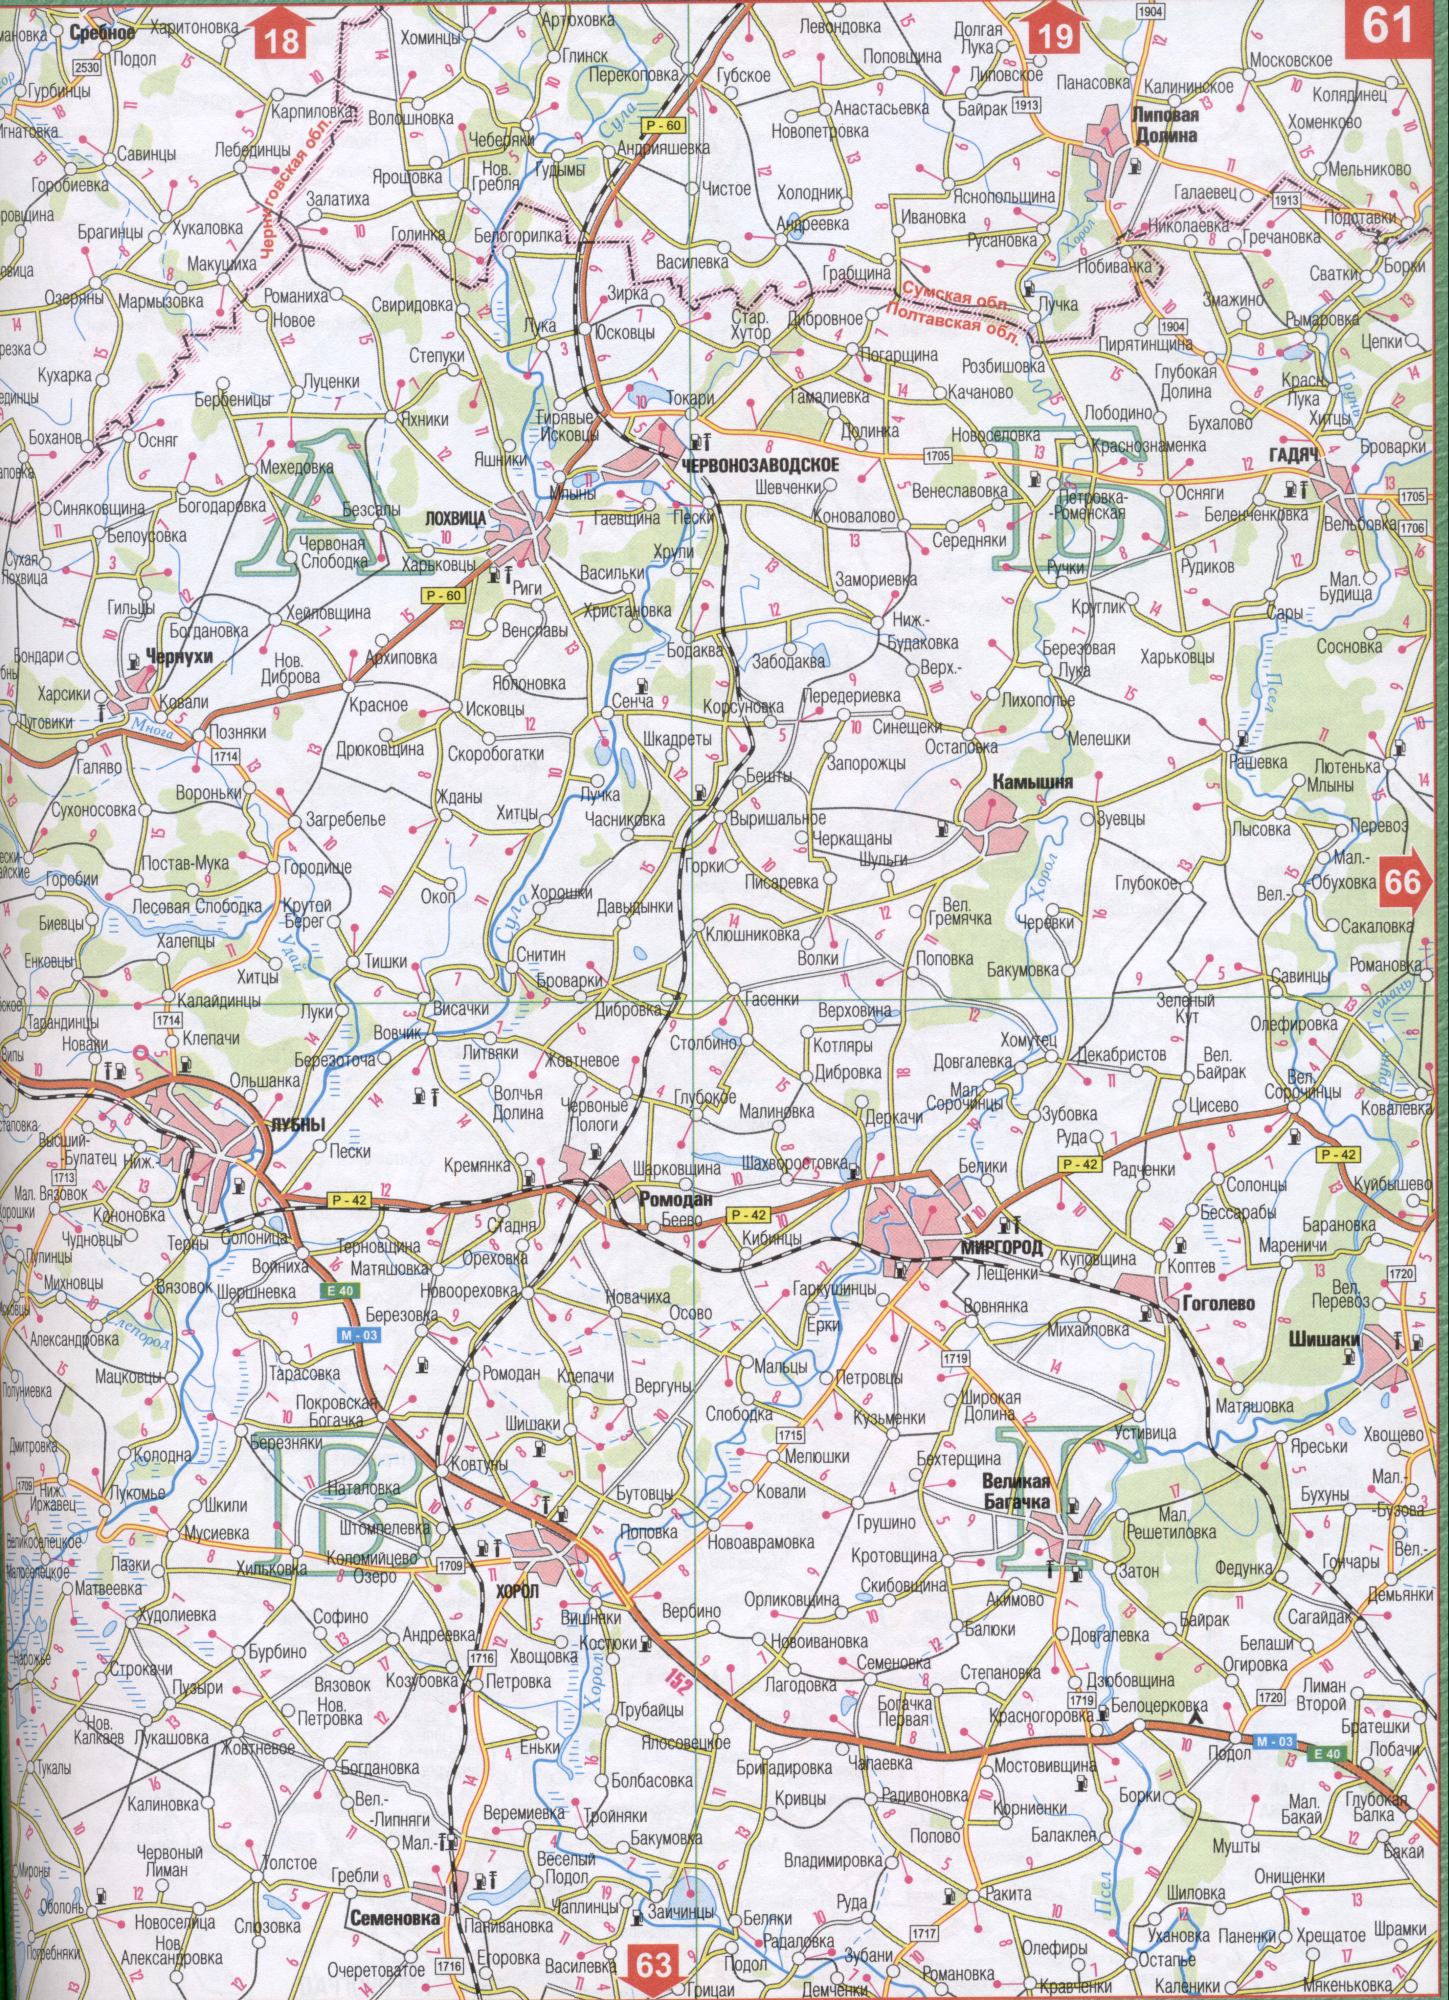 Karte von Poltawa Region der Ukraine (regionales Zentrum von Poltawa). Laden Sie eine detaillierte Karte von Grun-Tashan, Uday, viele